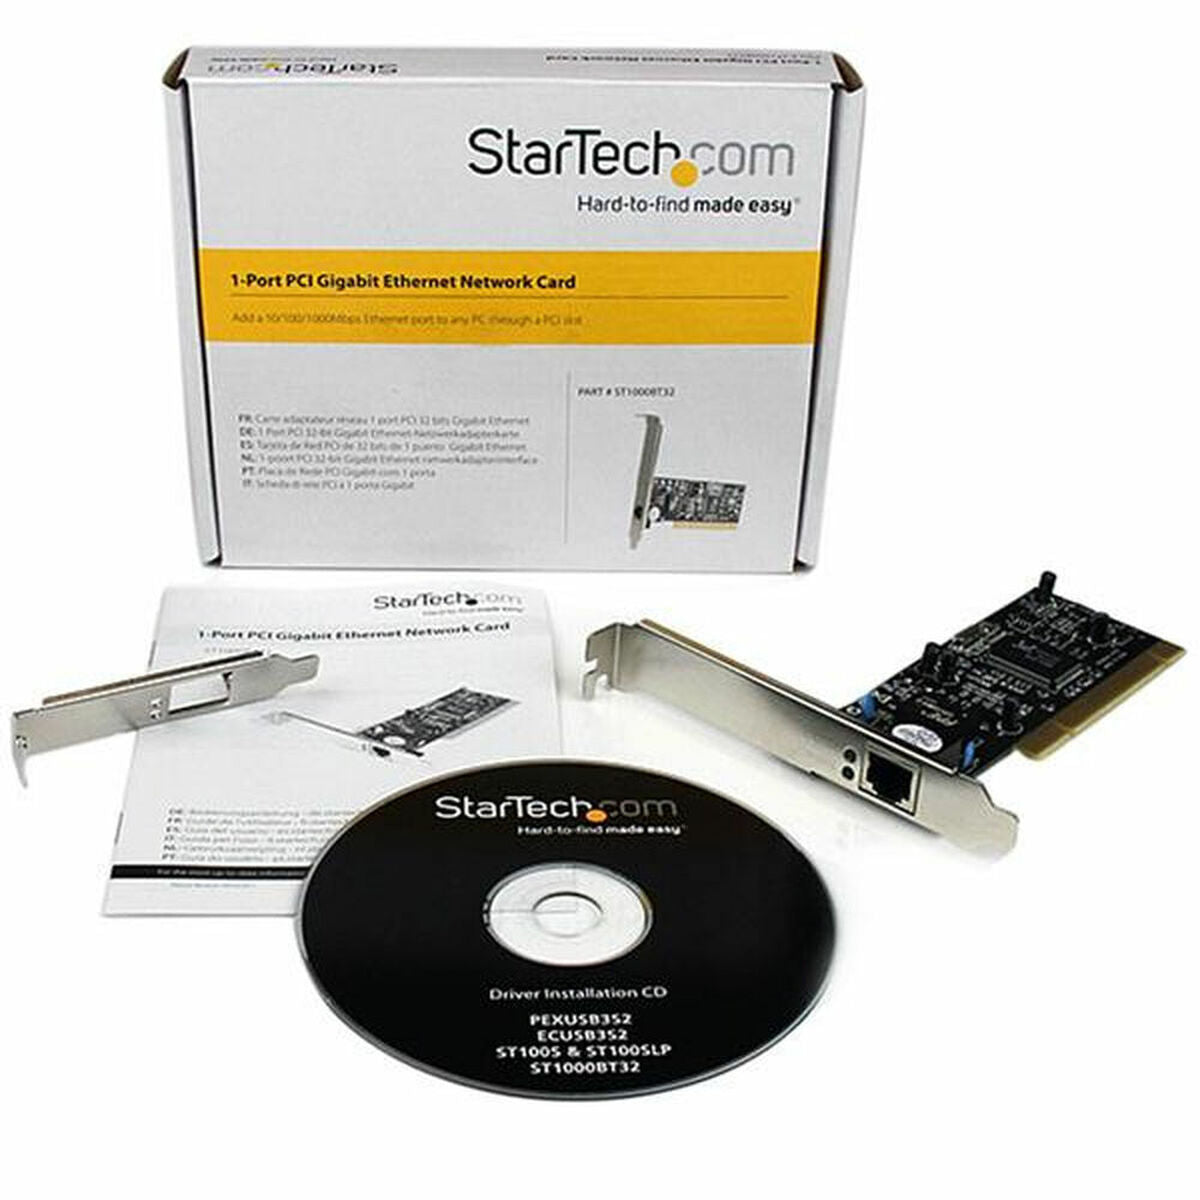 Startech ST1000BT32 Netzwerkkarte